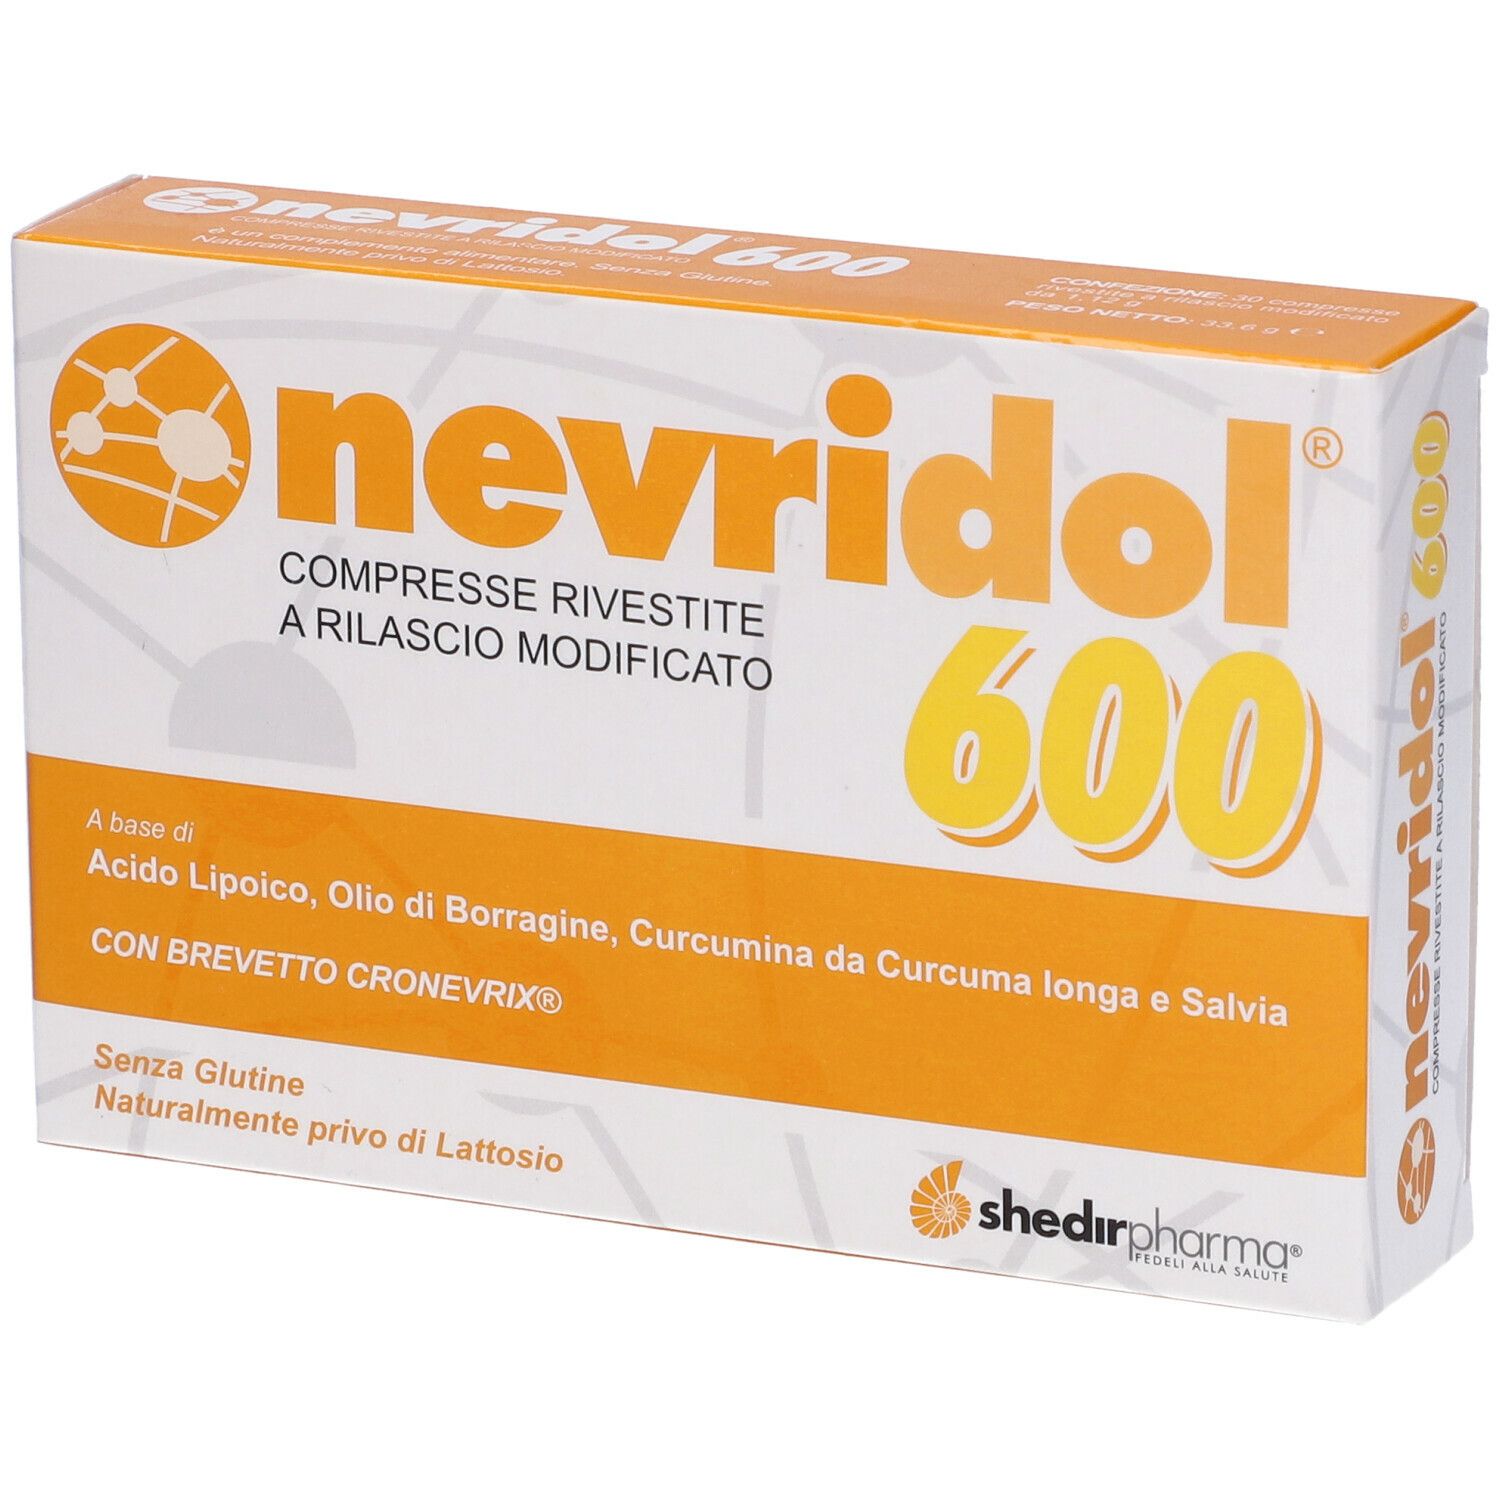 Nevridol 600